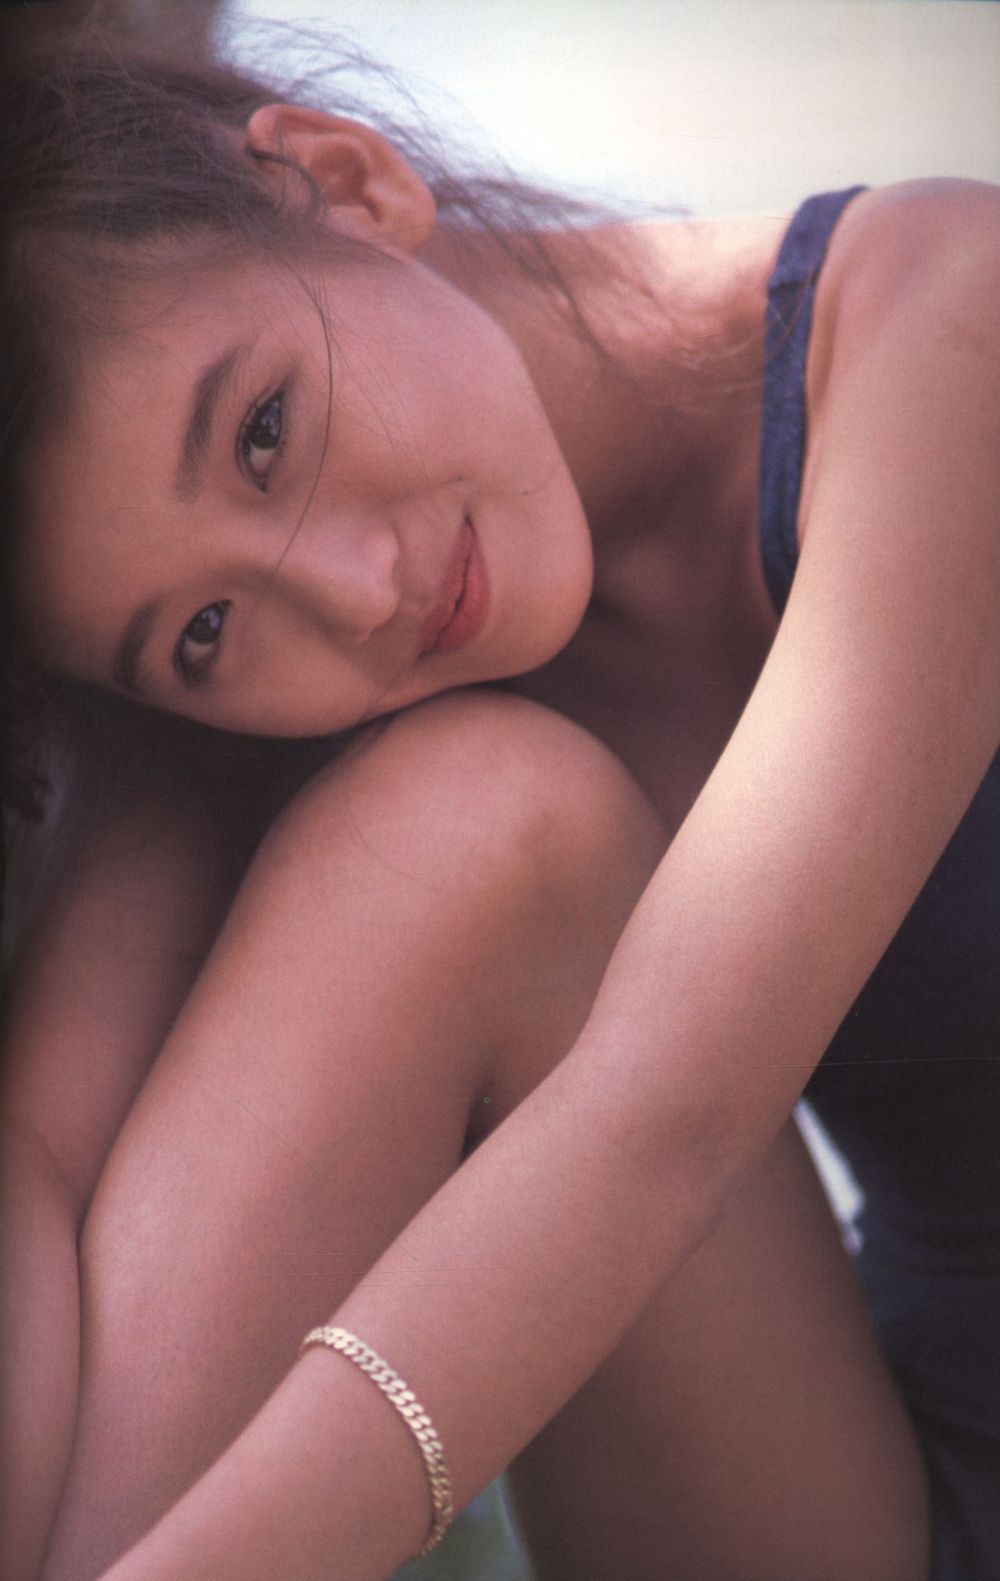 Minako Honda Sexy and Hottest Photos , Latest Pics